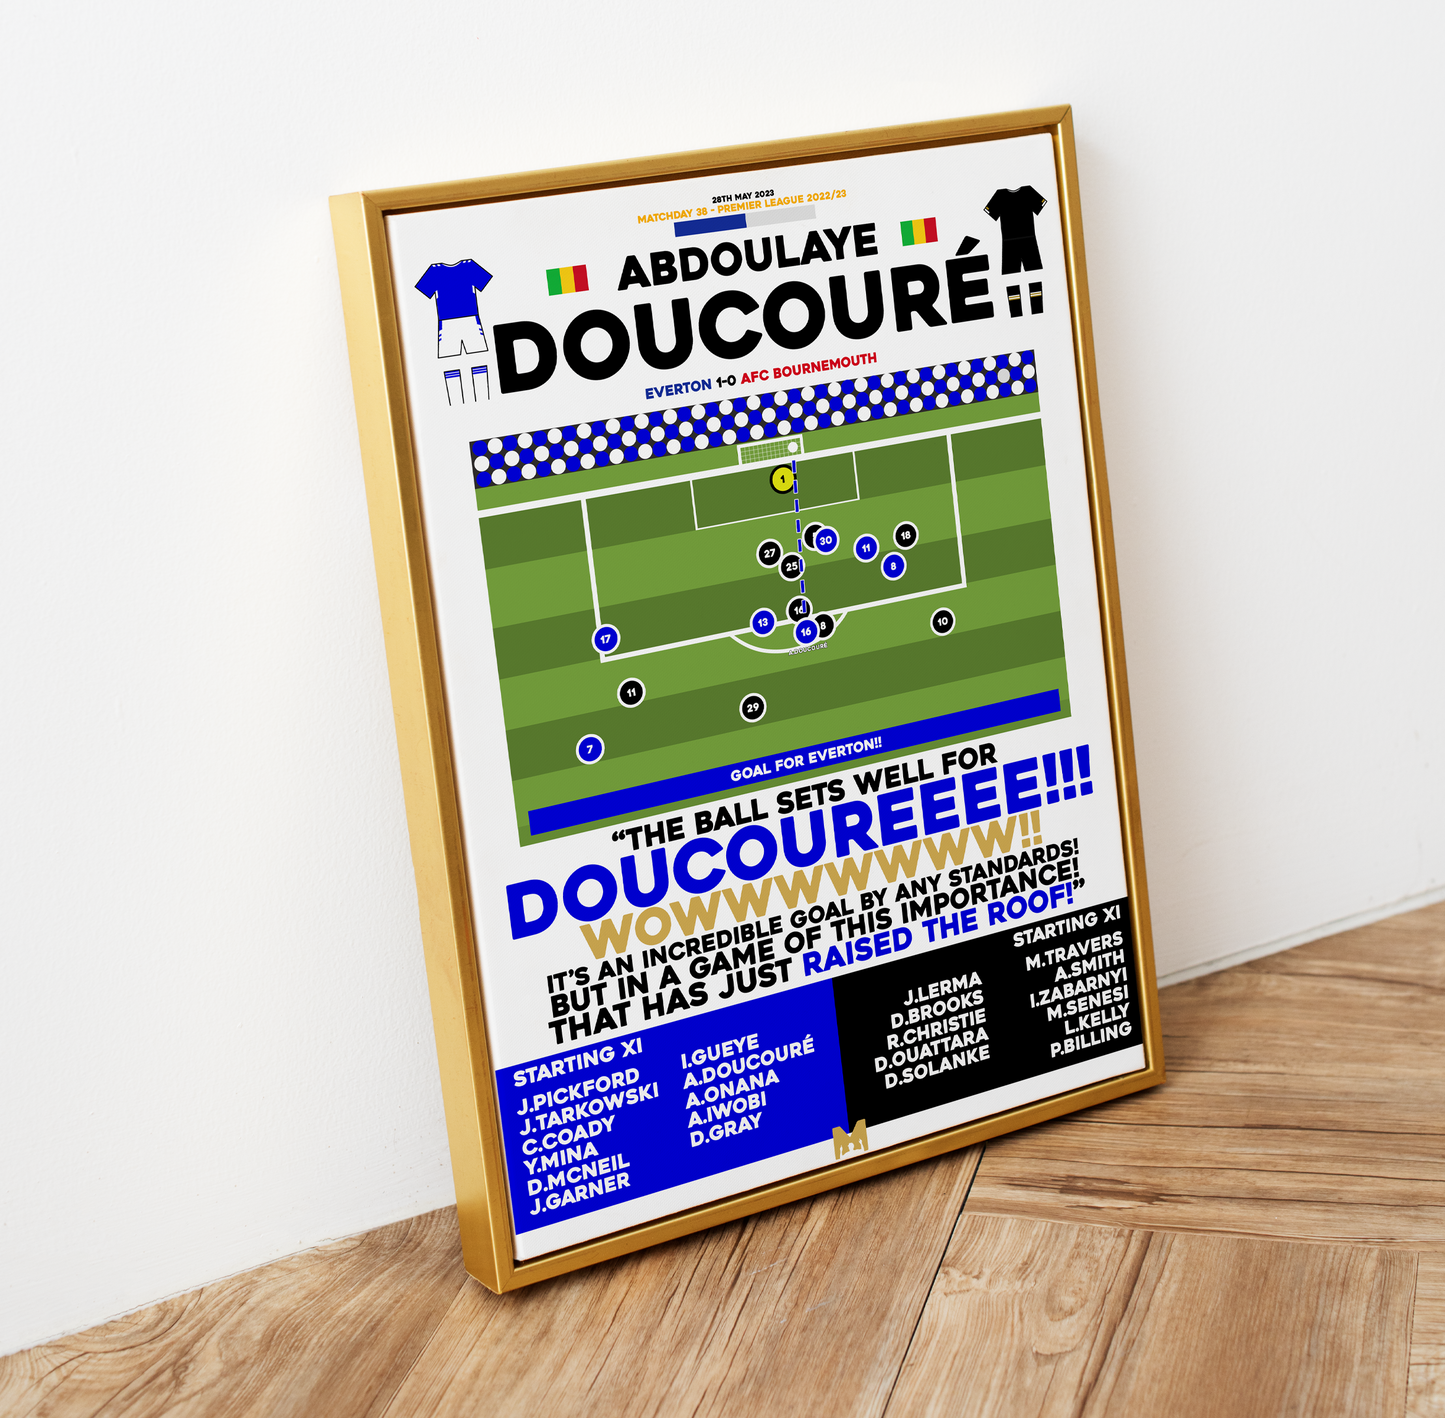 Abdoulaye Doucouré Goal vs AFC Bournemouth - Premier League 2022/23 - Everton